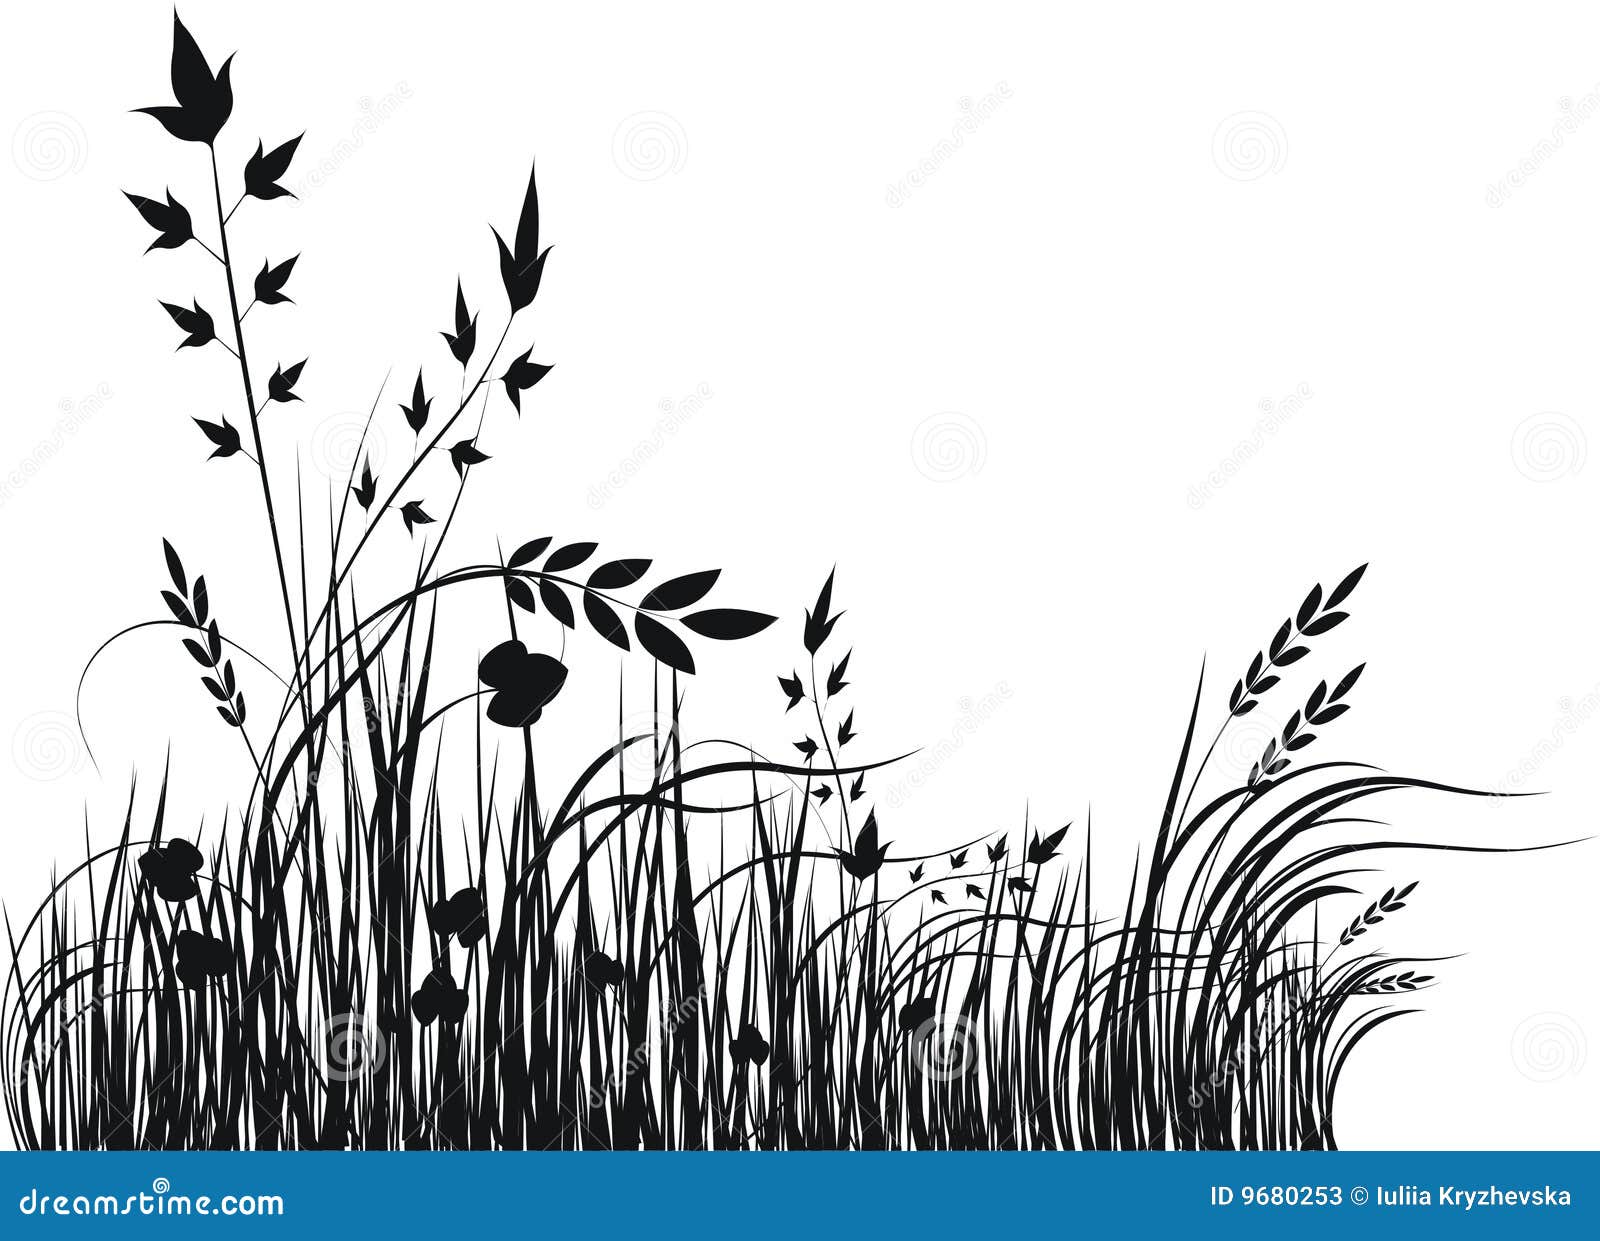 Grass Vector Silhouette Stock Photos - Image: 9680253